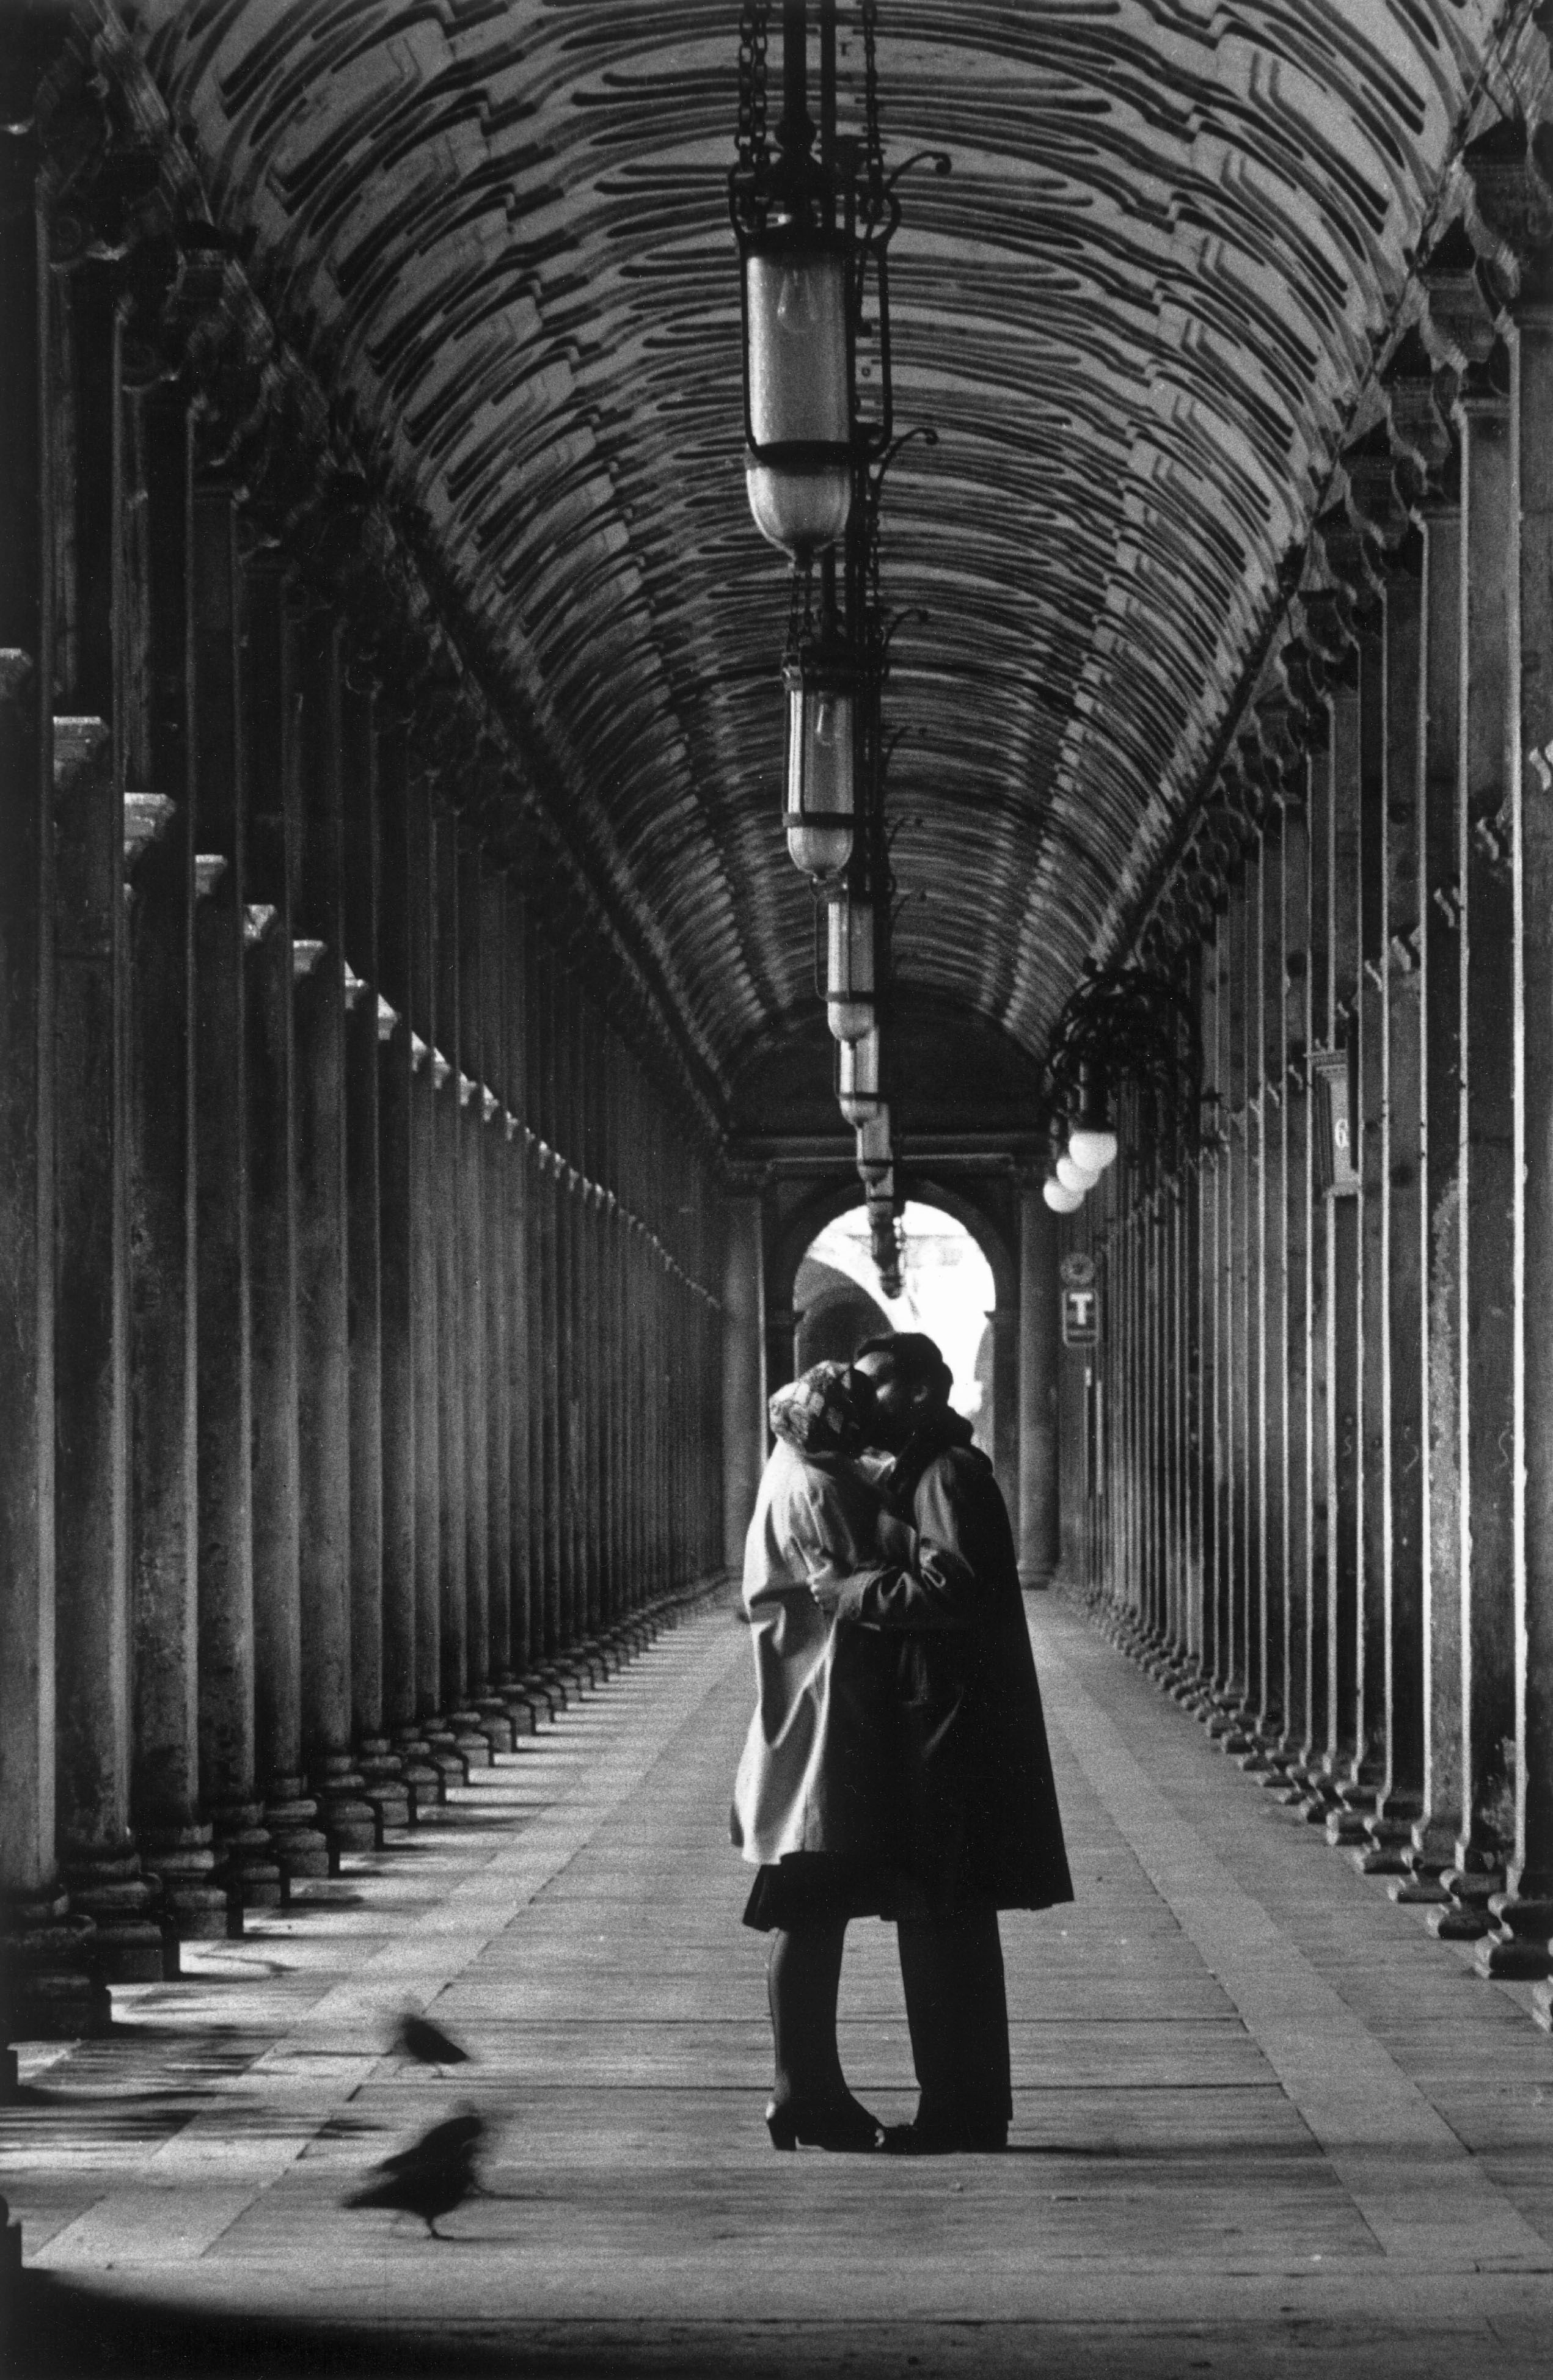 Пьяцца Сан-Марко, Венеция, 1959. Фотограф Джанни Беренго Гардин